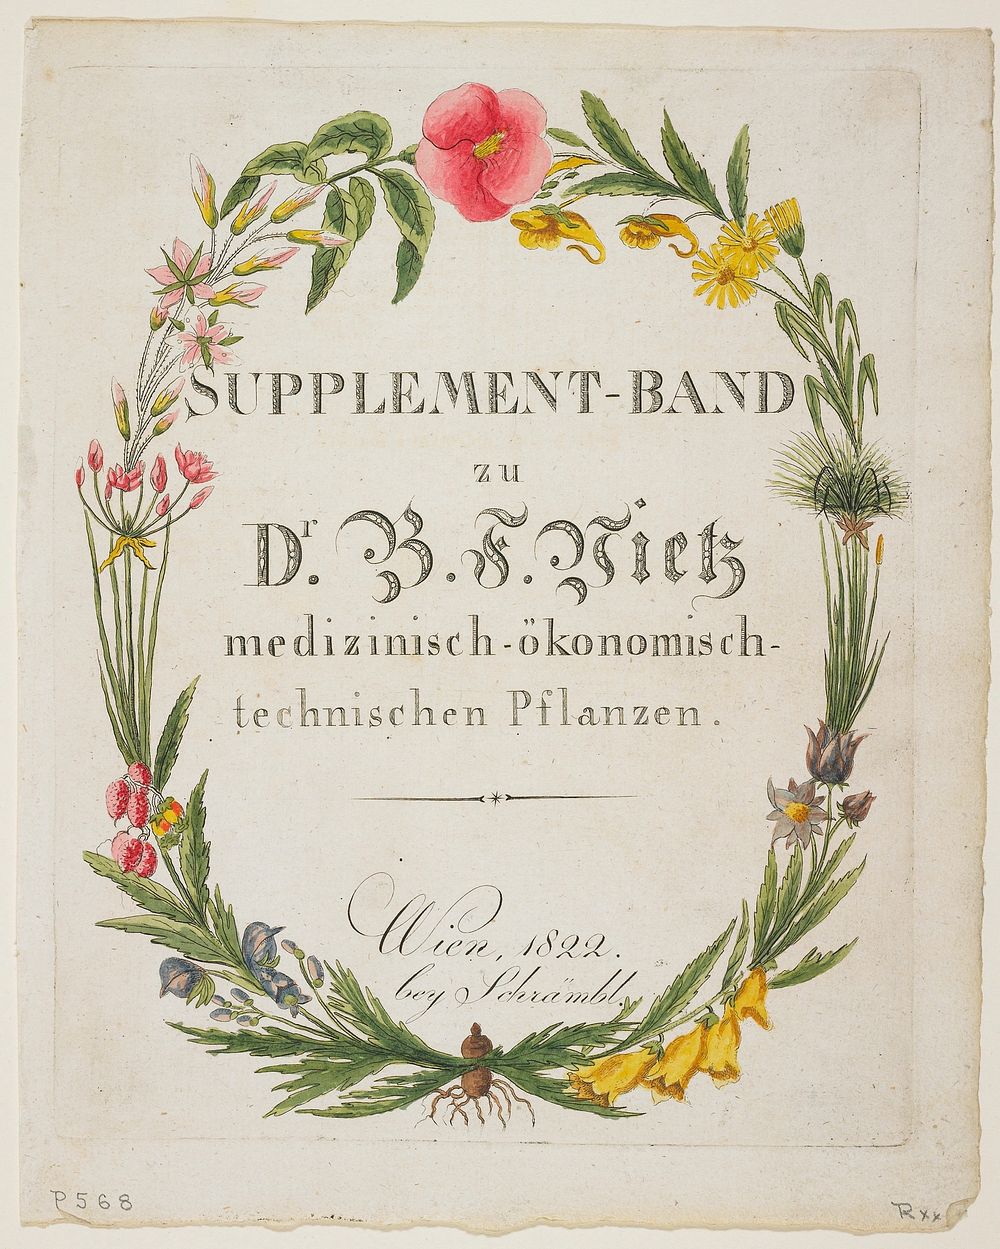 Frontispiece and Title Page to Supplement-Band zu Dr. B. F. Vietz medizinisch-ökonomisch-technischen Pflanzen from Icones…